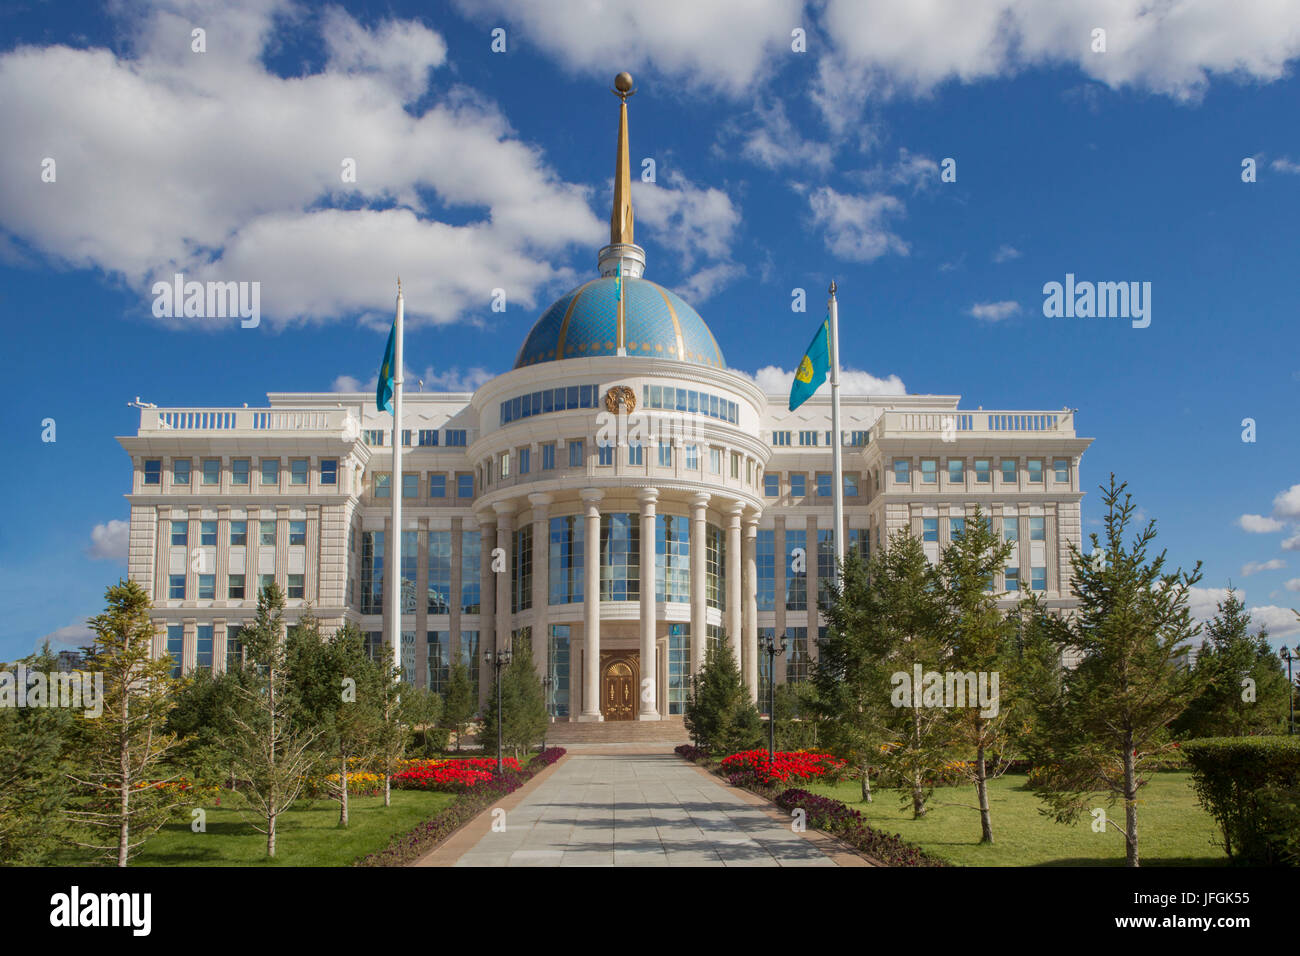 Le Kazakhstan, Astana, Président de la ville, palais, palais Ak Orda Banque D'Images